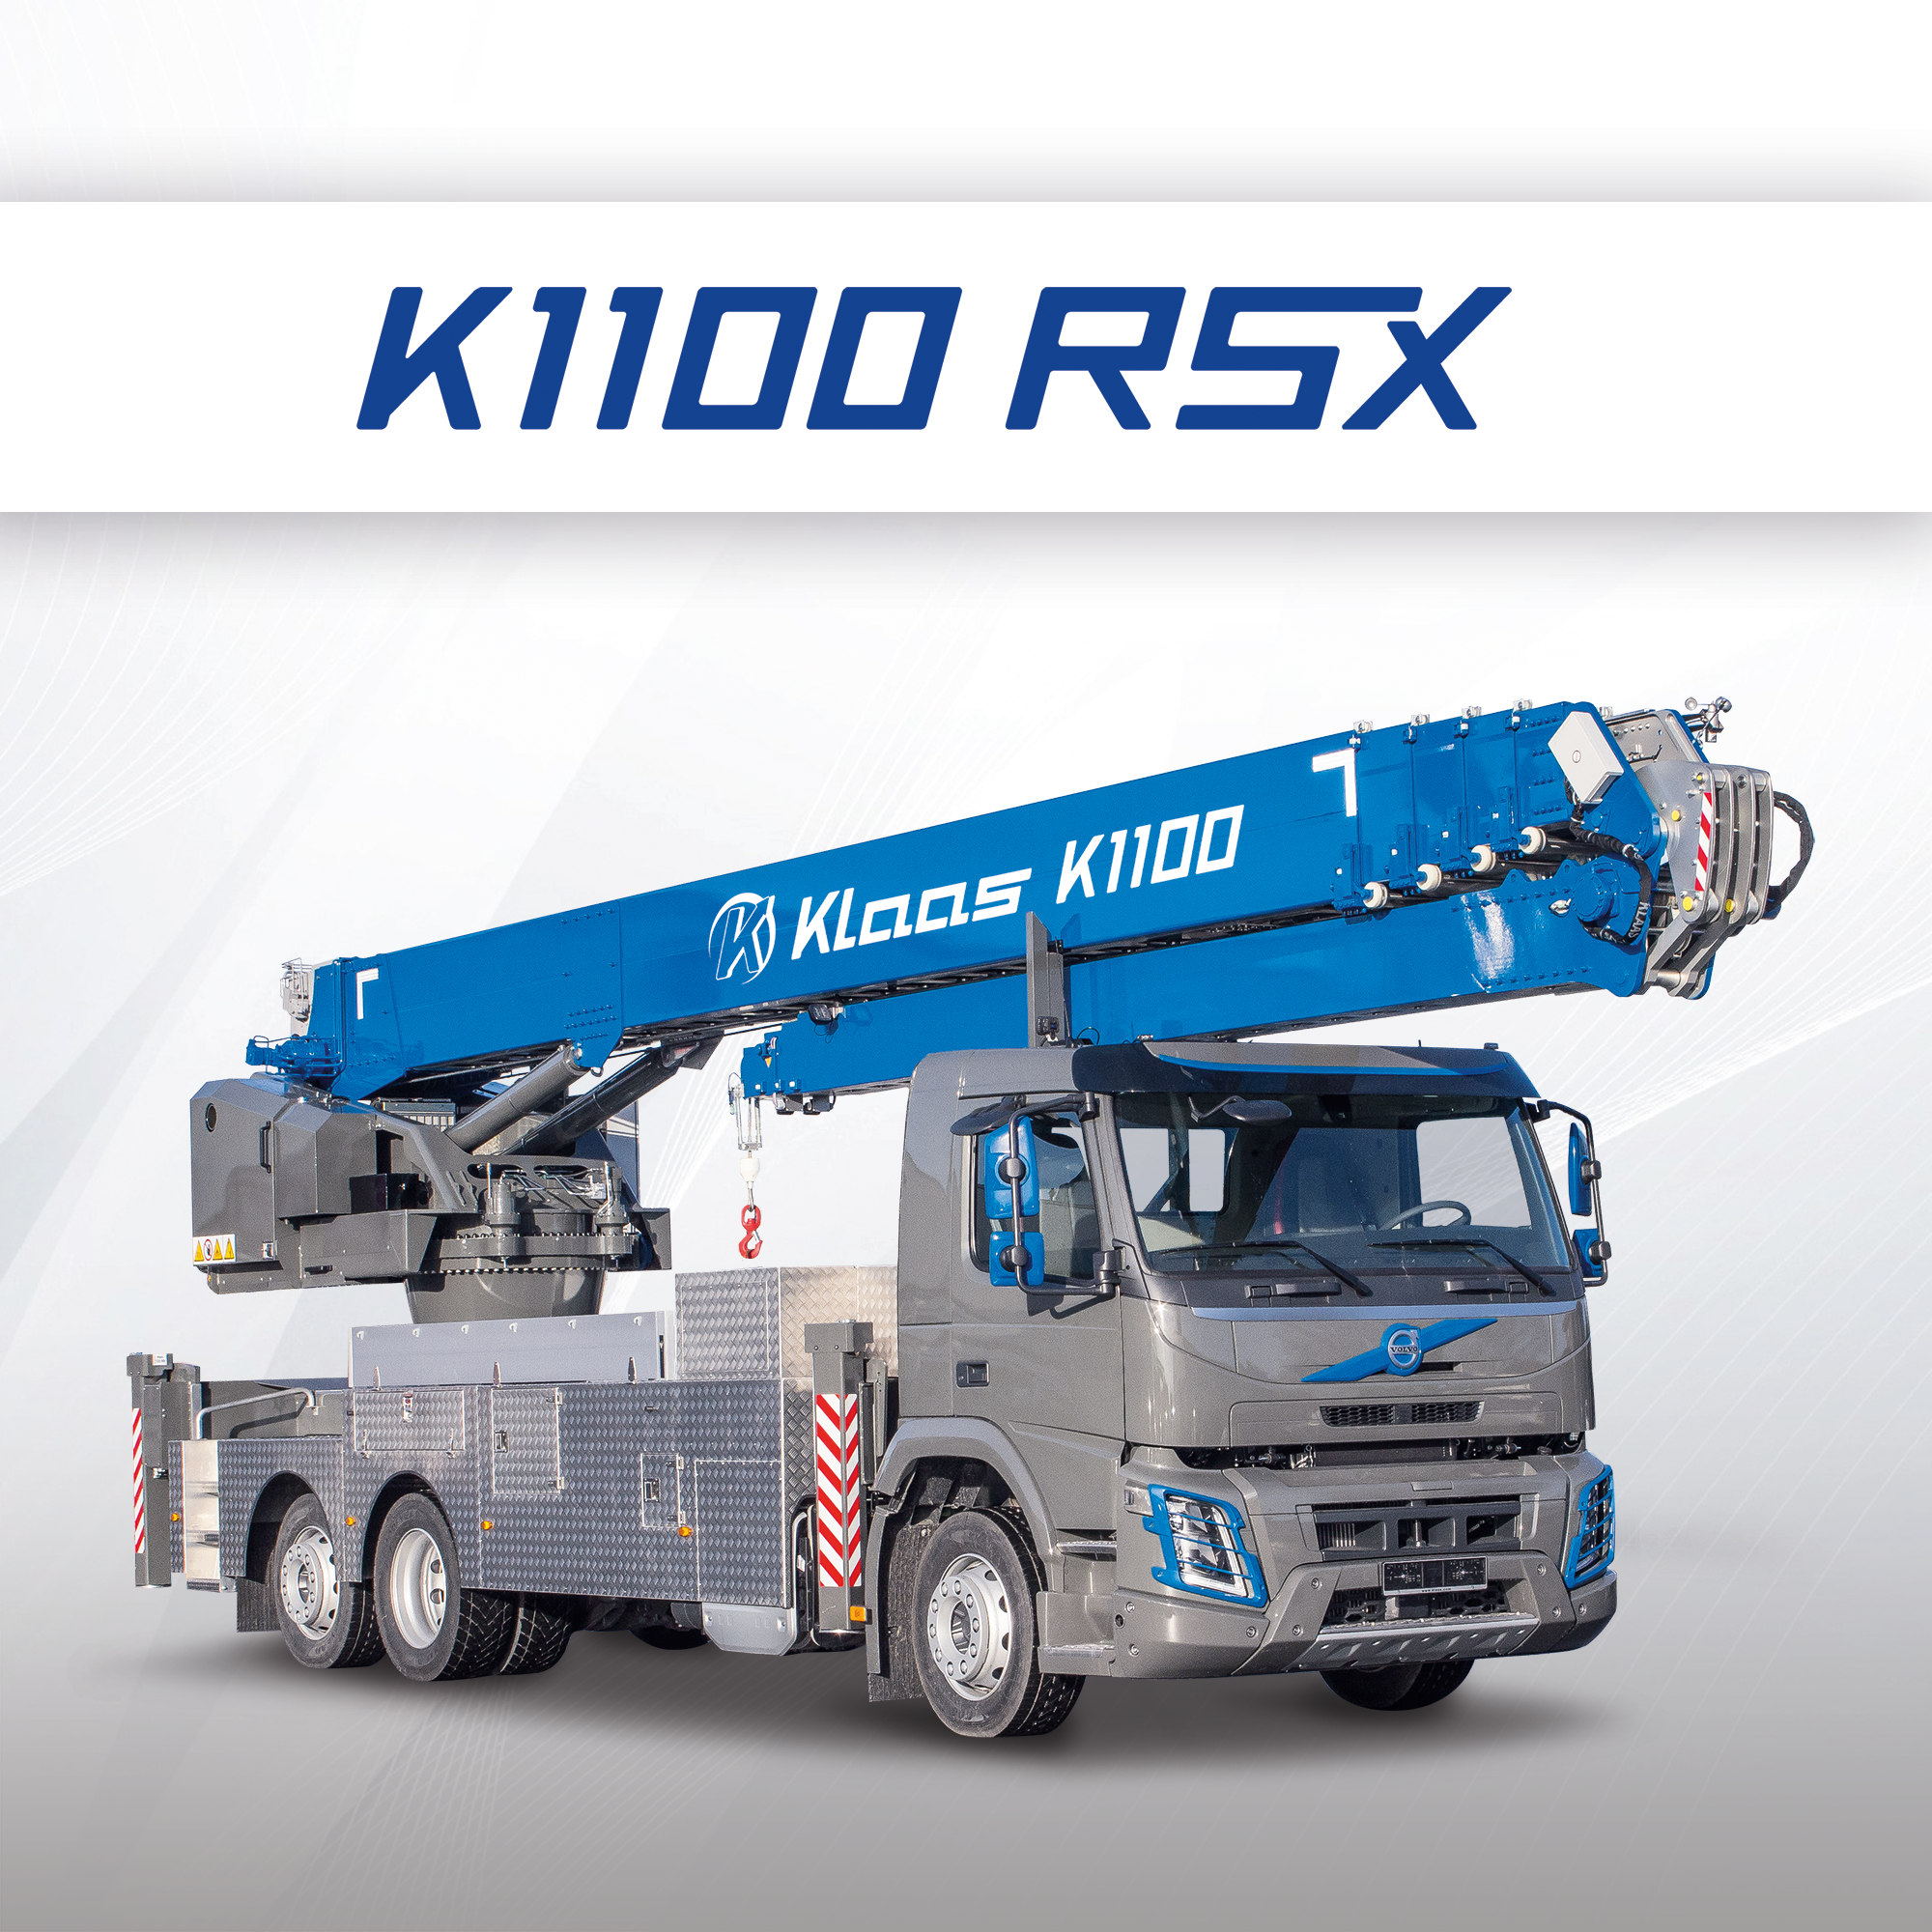 Klaas K1100 RSX